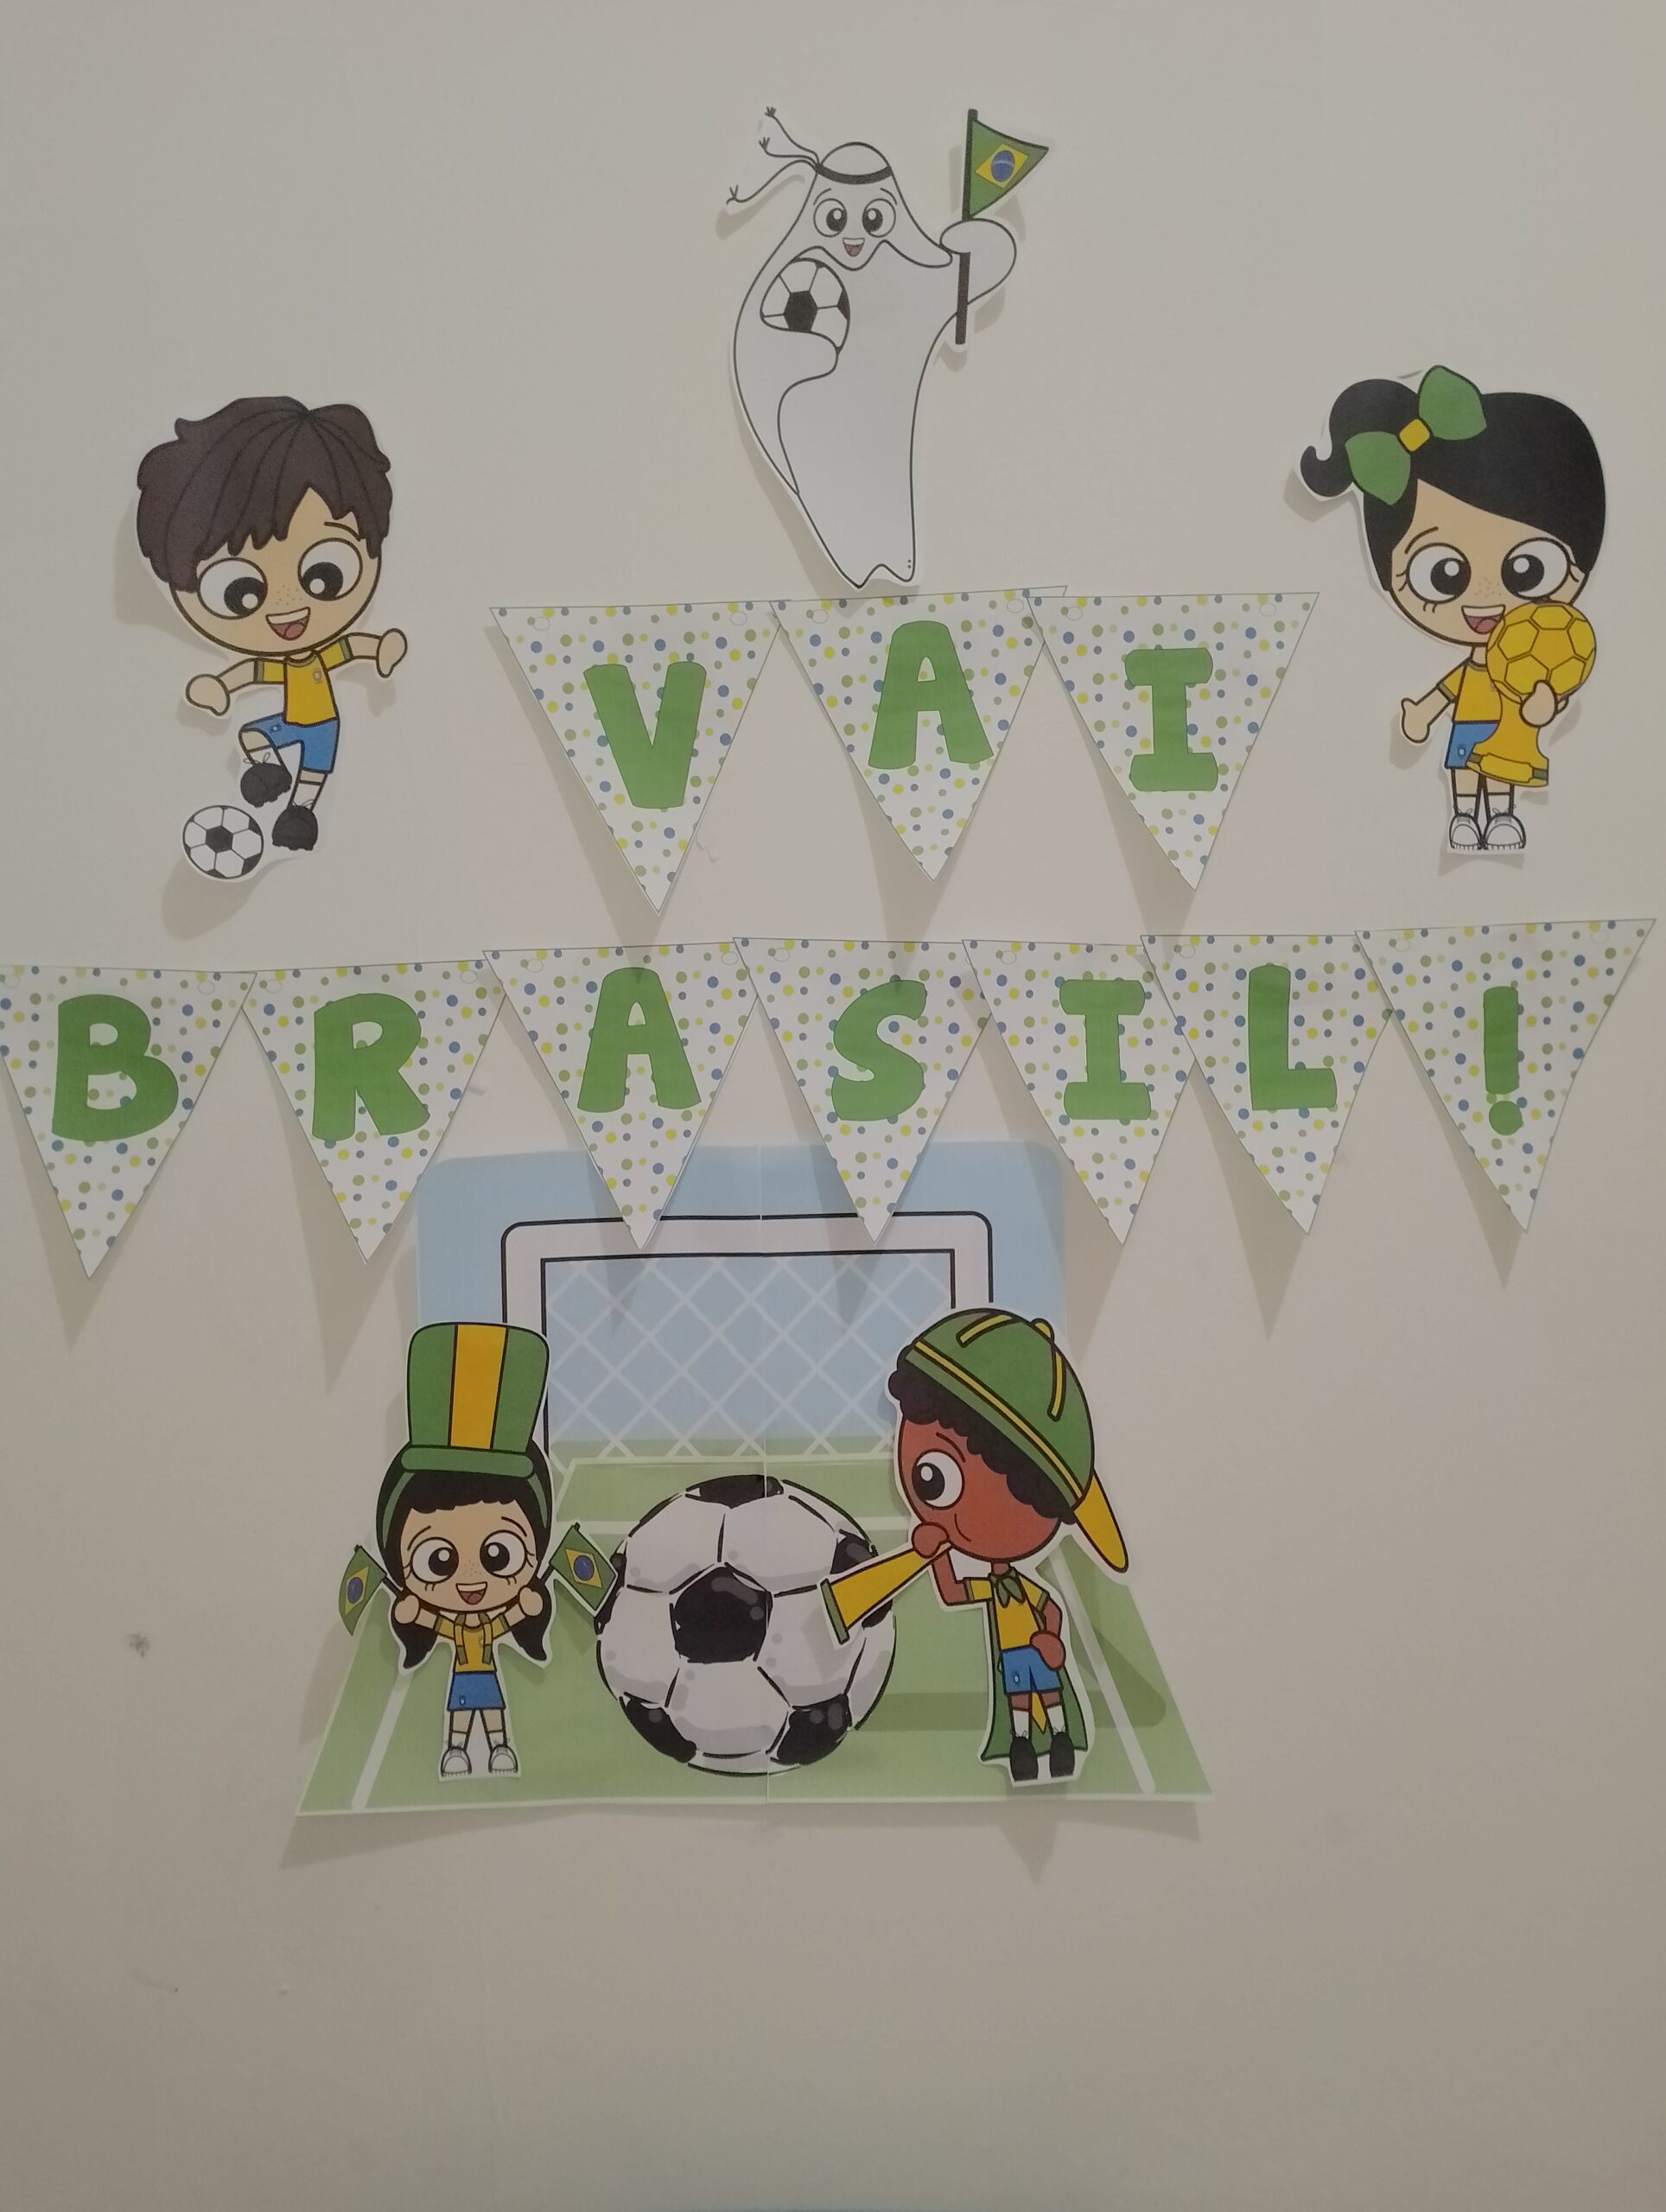 Kit Copa do Mundo - Brincadeiras Bingo e Bolão